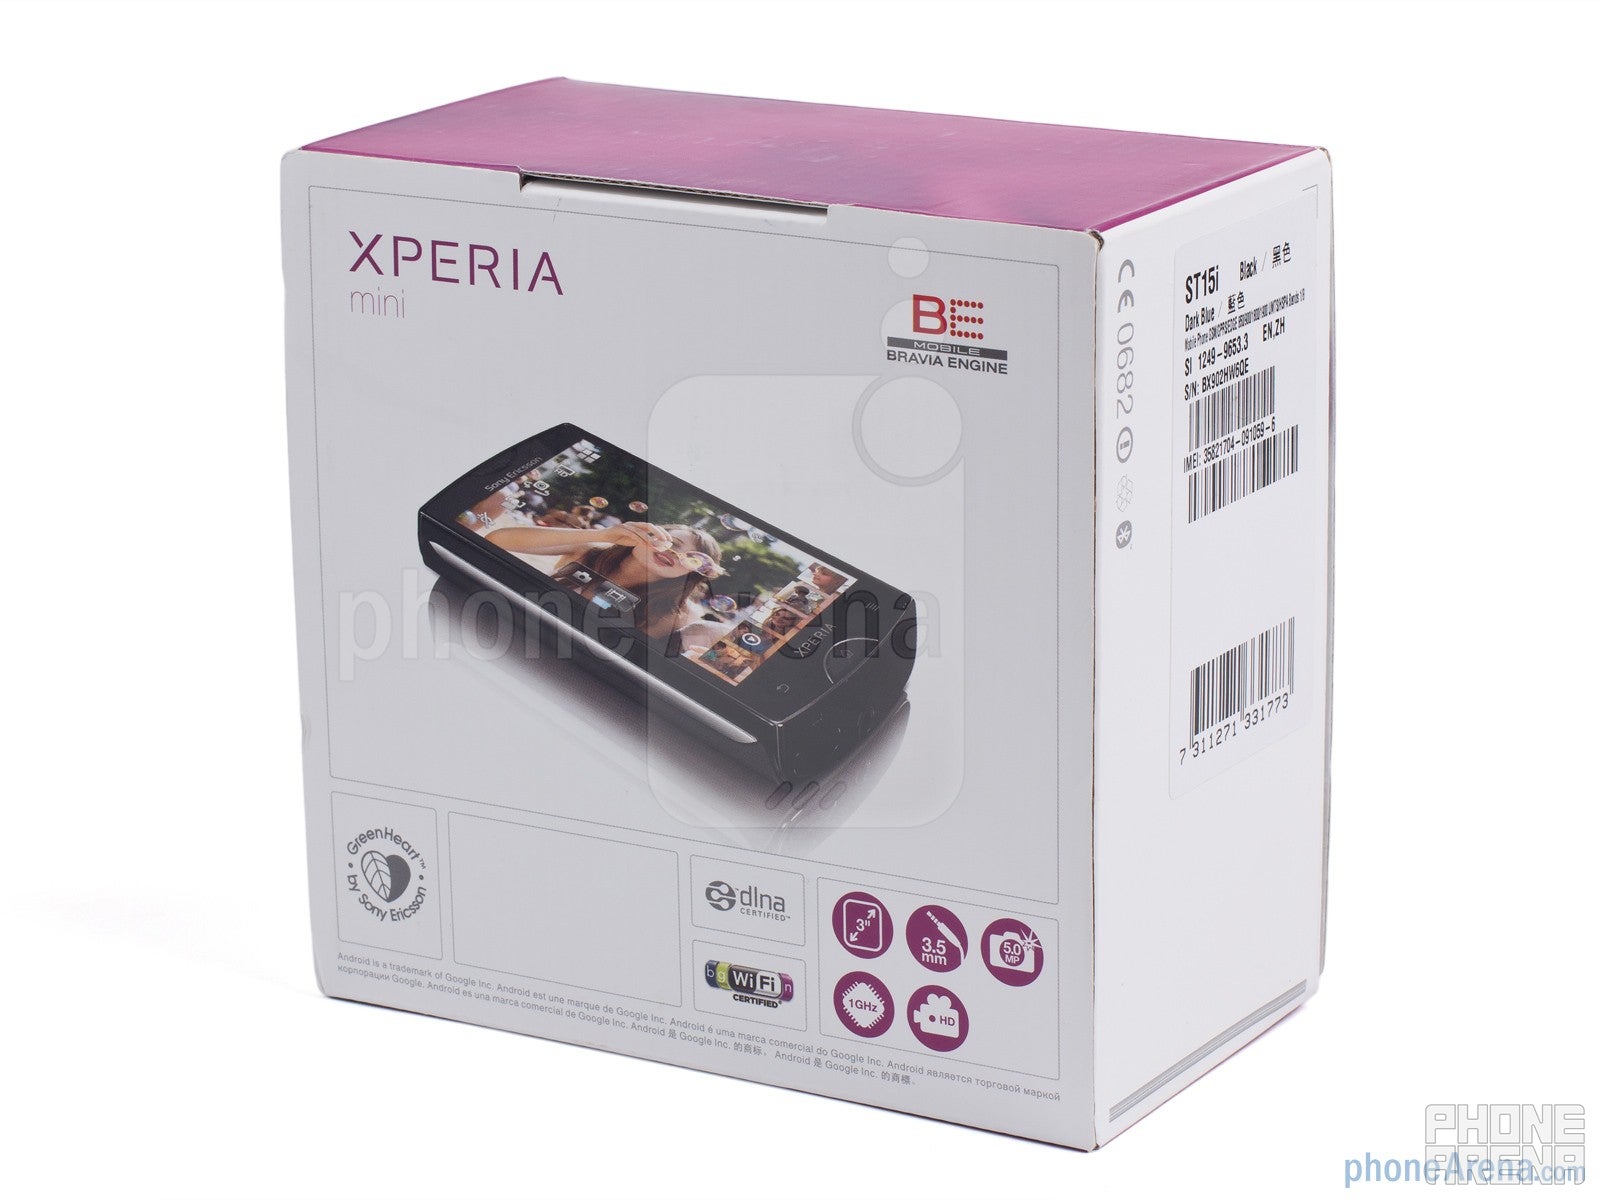 Sony Ericsson Xperia mini Review